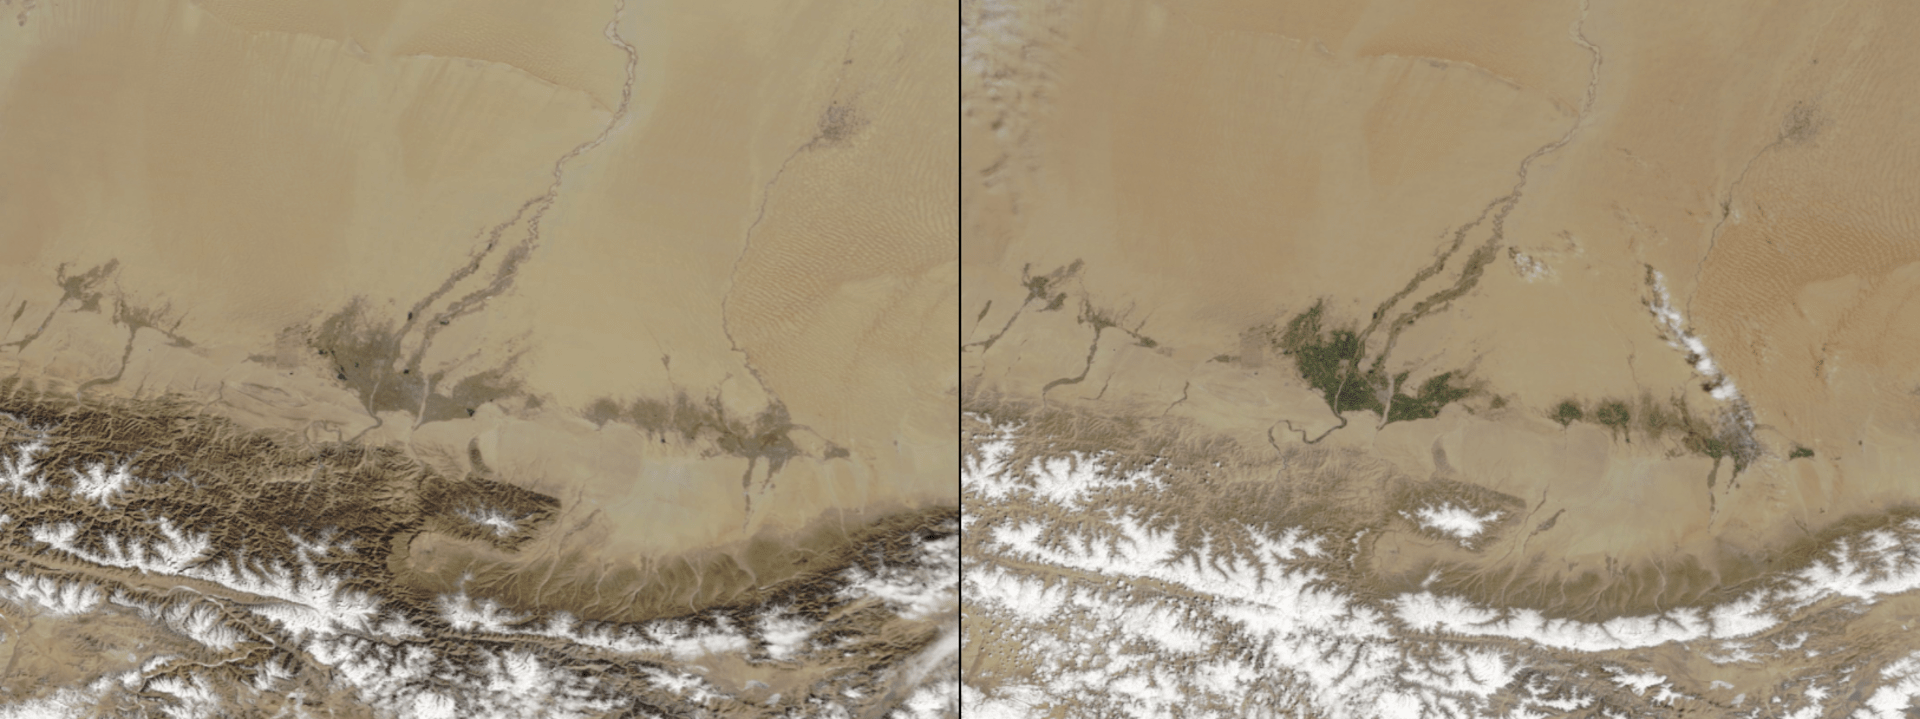 Galerie NASA: Asijskou poušť Taklamakan osvěžila na jaře zeleň. Vlevo únor 2020, vpravo duben 2020.